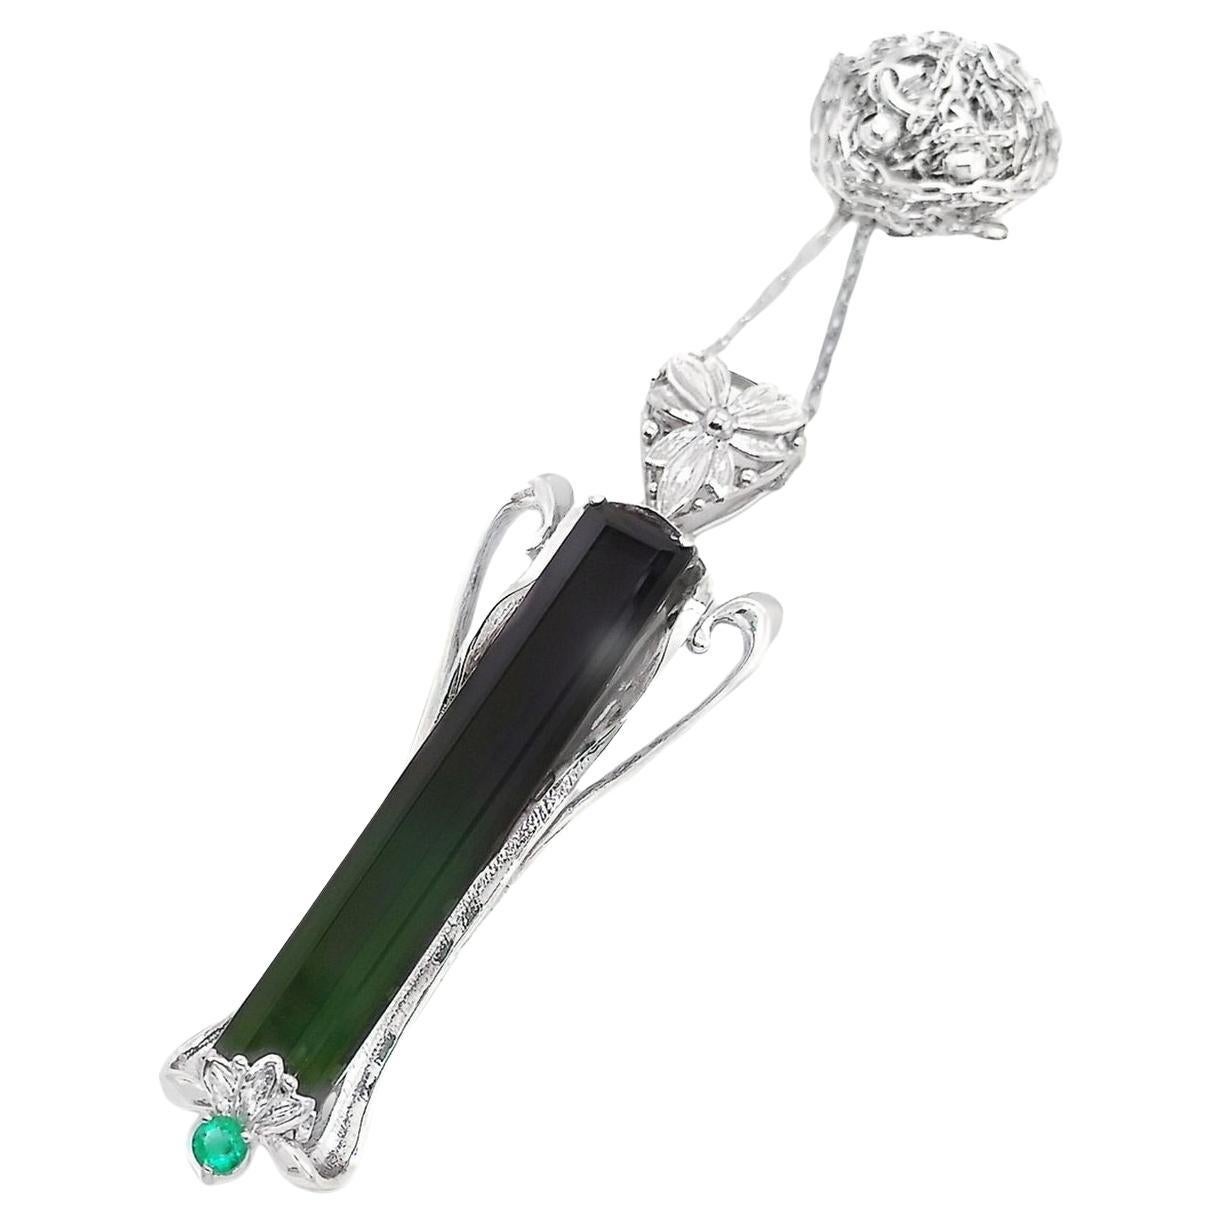 Diese anmutige Halskette mit Anhänger von Top Crown Jewelry ist ein klassisches, minimalistisches Design, das einen natürlichen grünen Turmalin mit einem natürlichen Smaragd kombiniert und jedem Look den perfekten Glamour verleiht.
Die Halskette ist